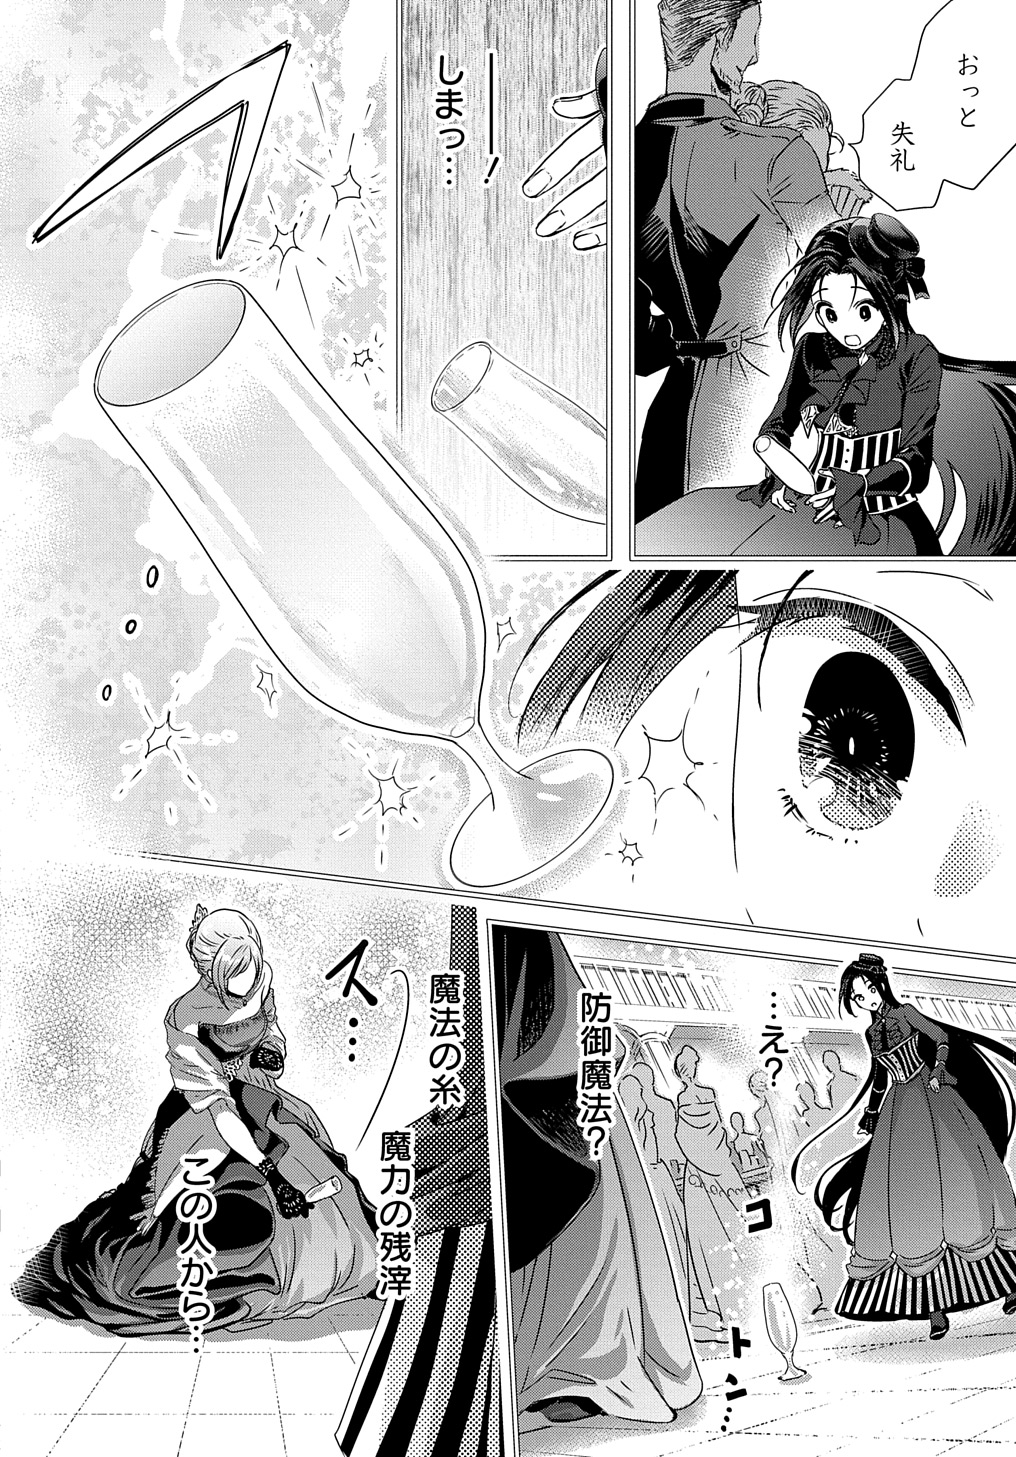 Konyakusha no Uwaki Genba wo Michatta no de Hajimari no Kane ga narimashita - Chapter 9 - Page 2